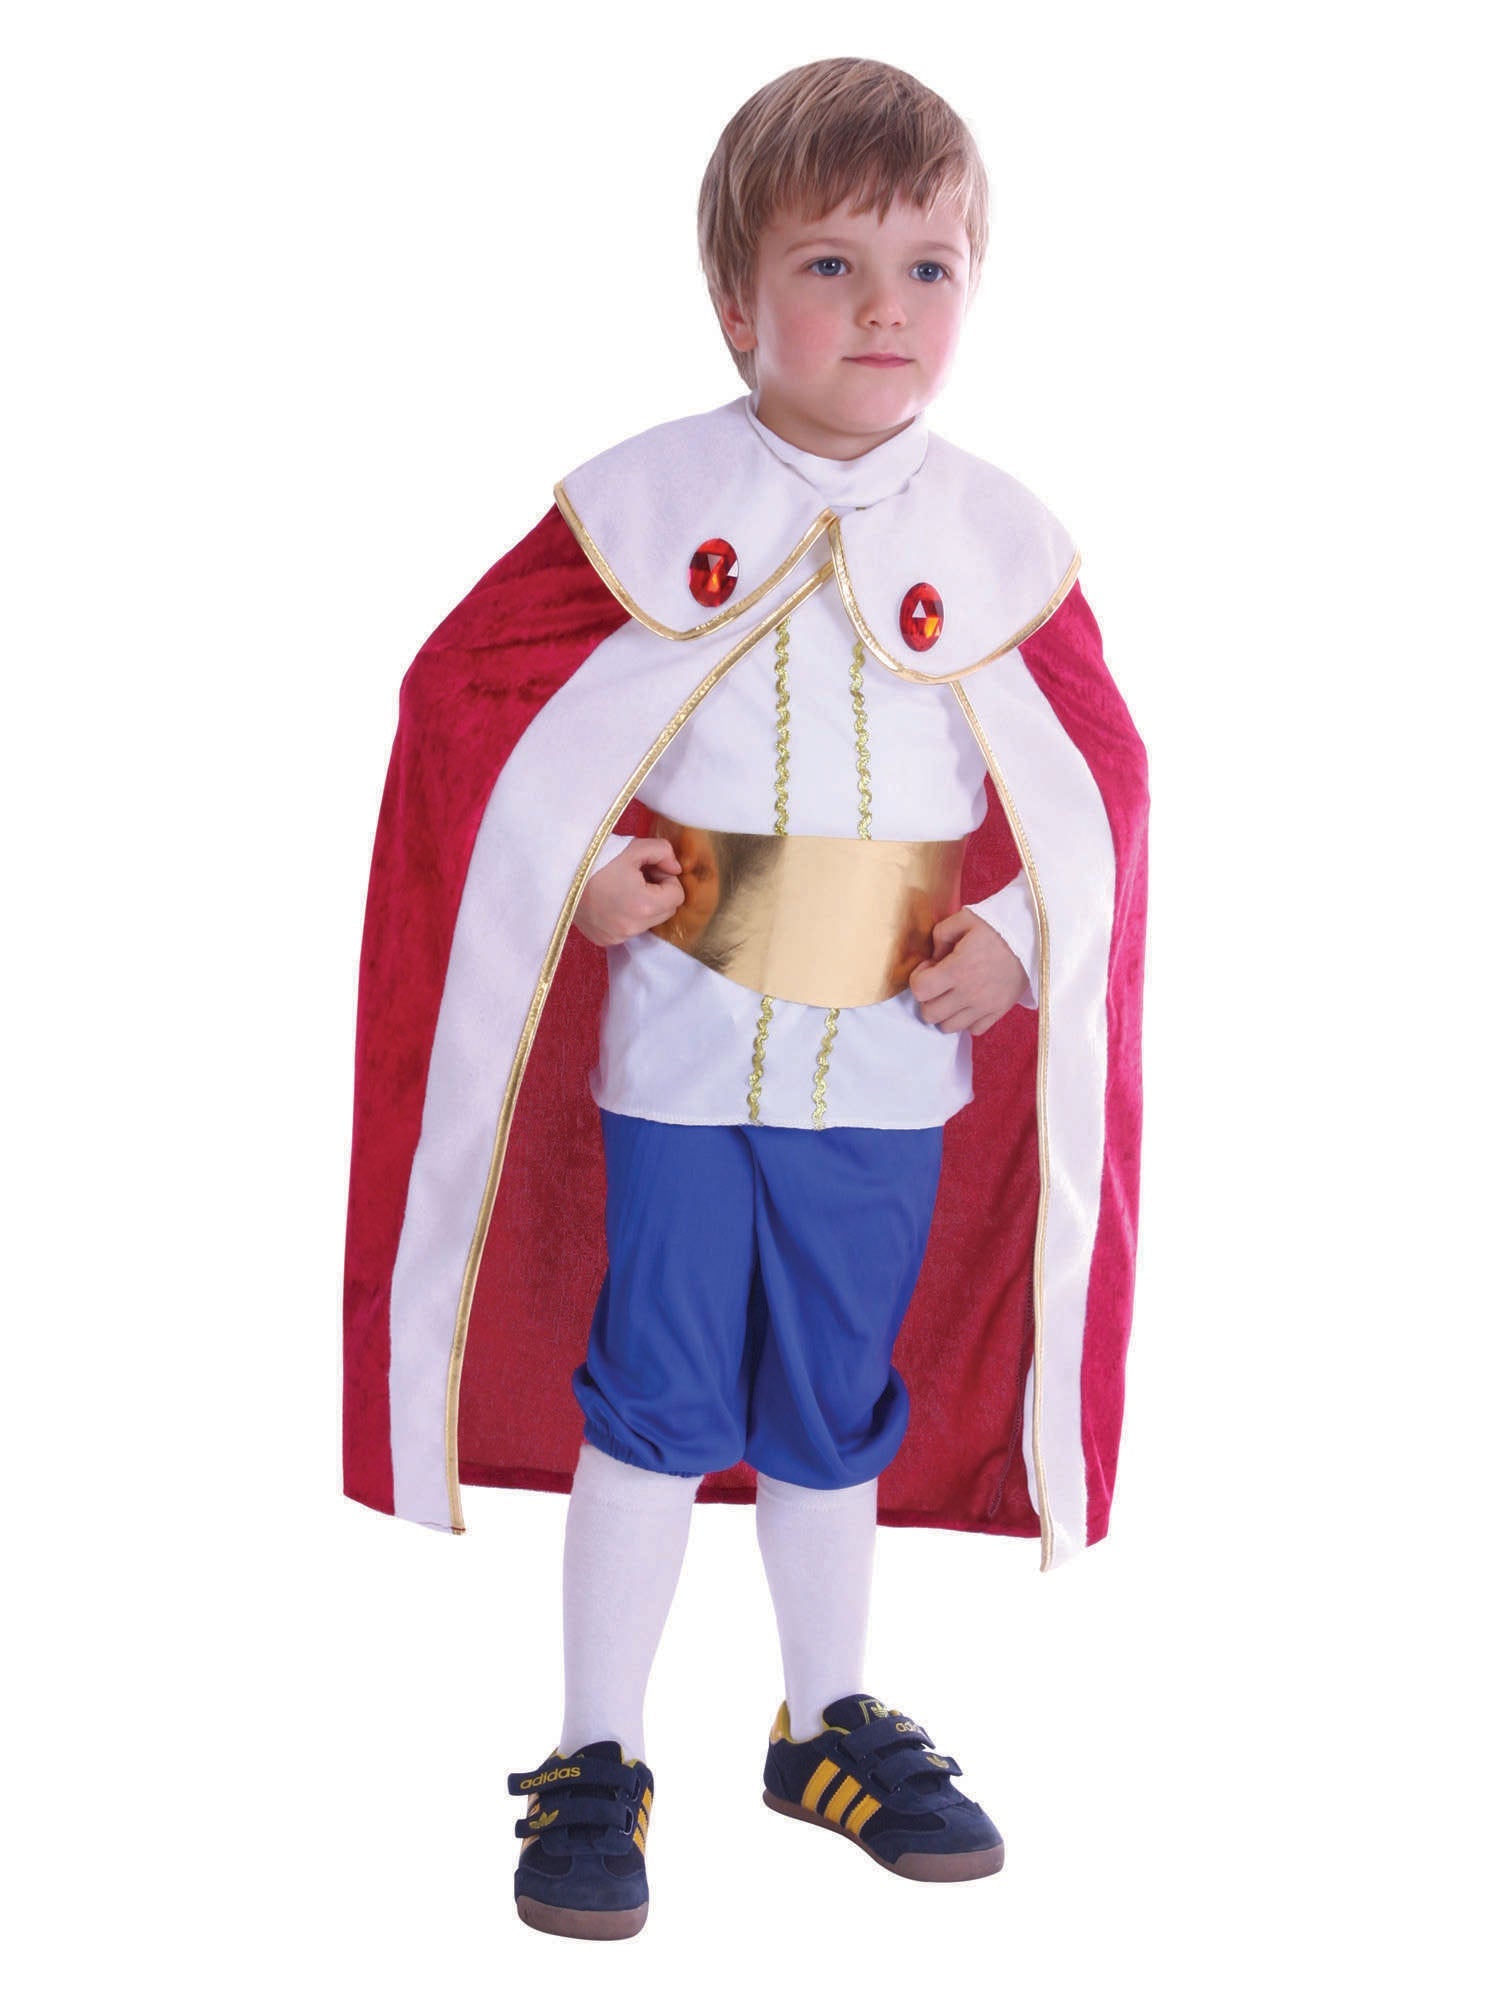 Toddler King Costume Bundle